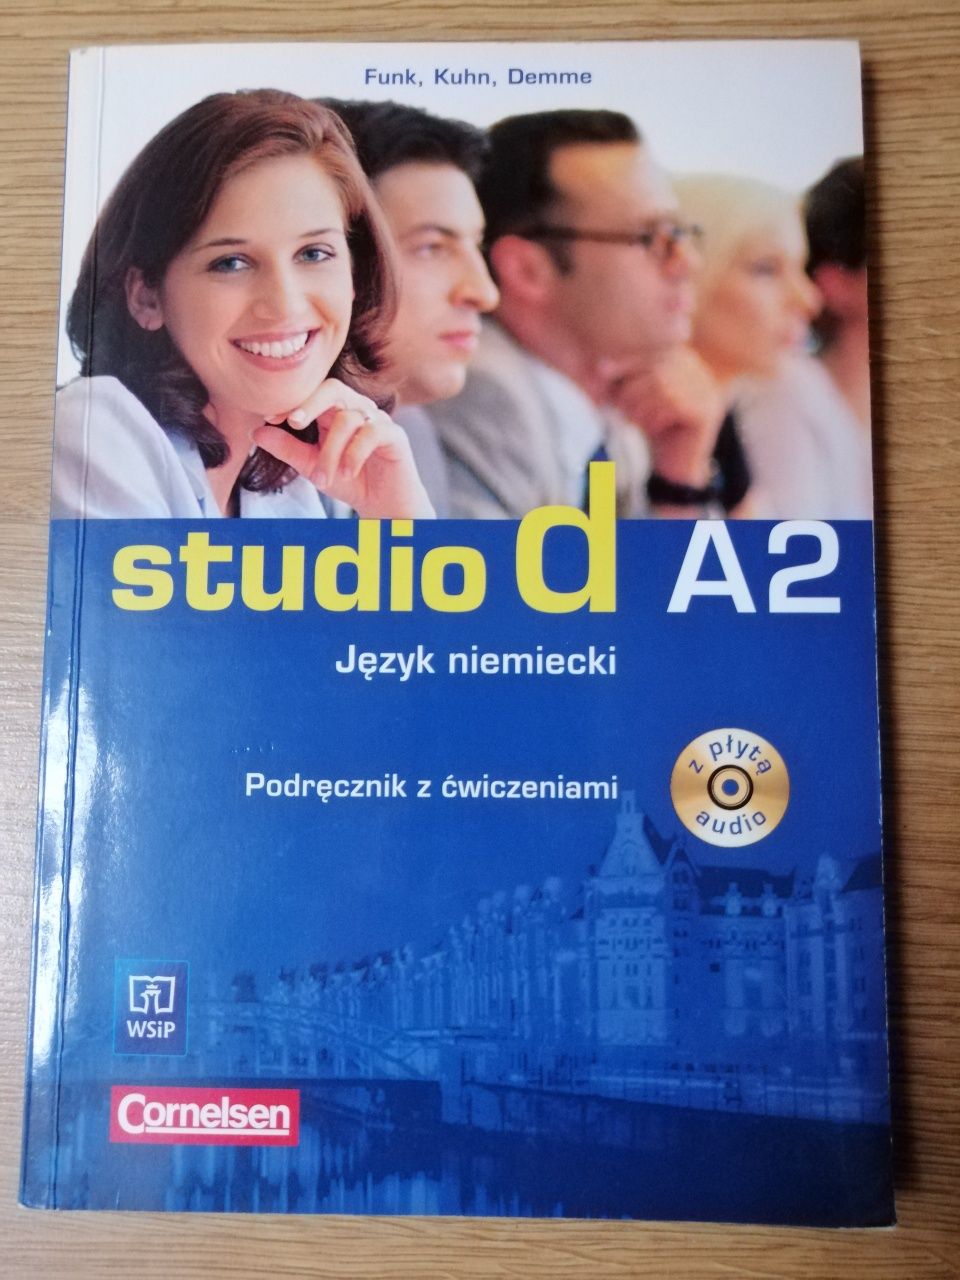 Studio d a2 książka